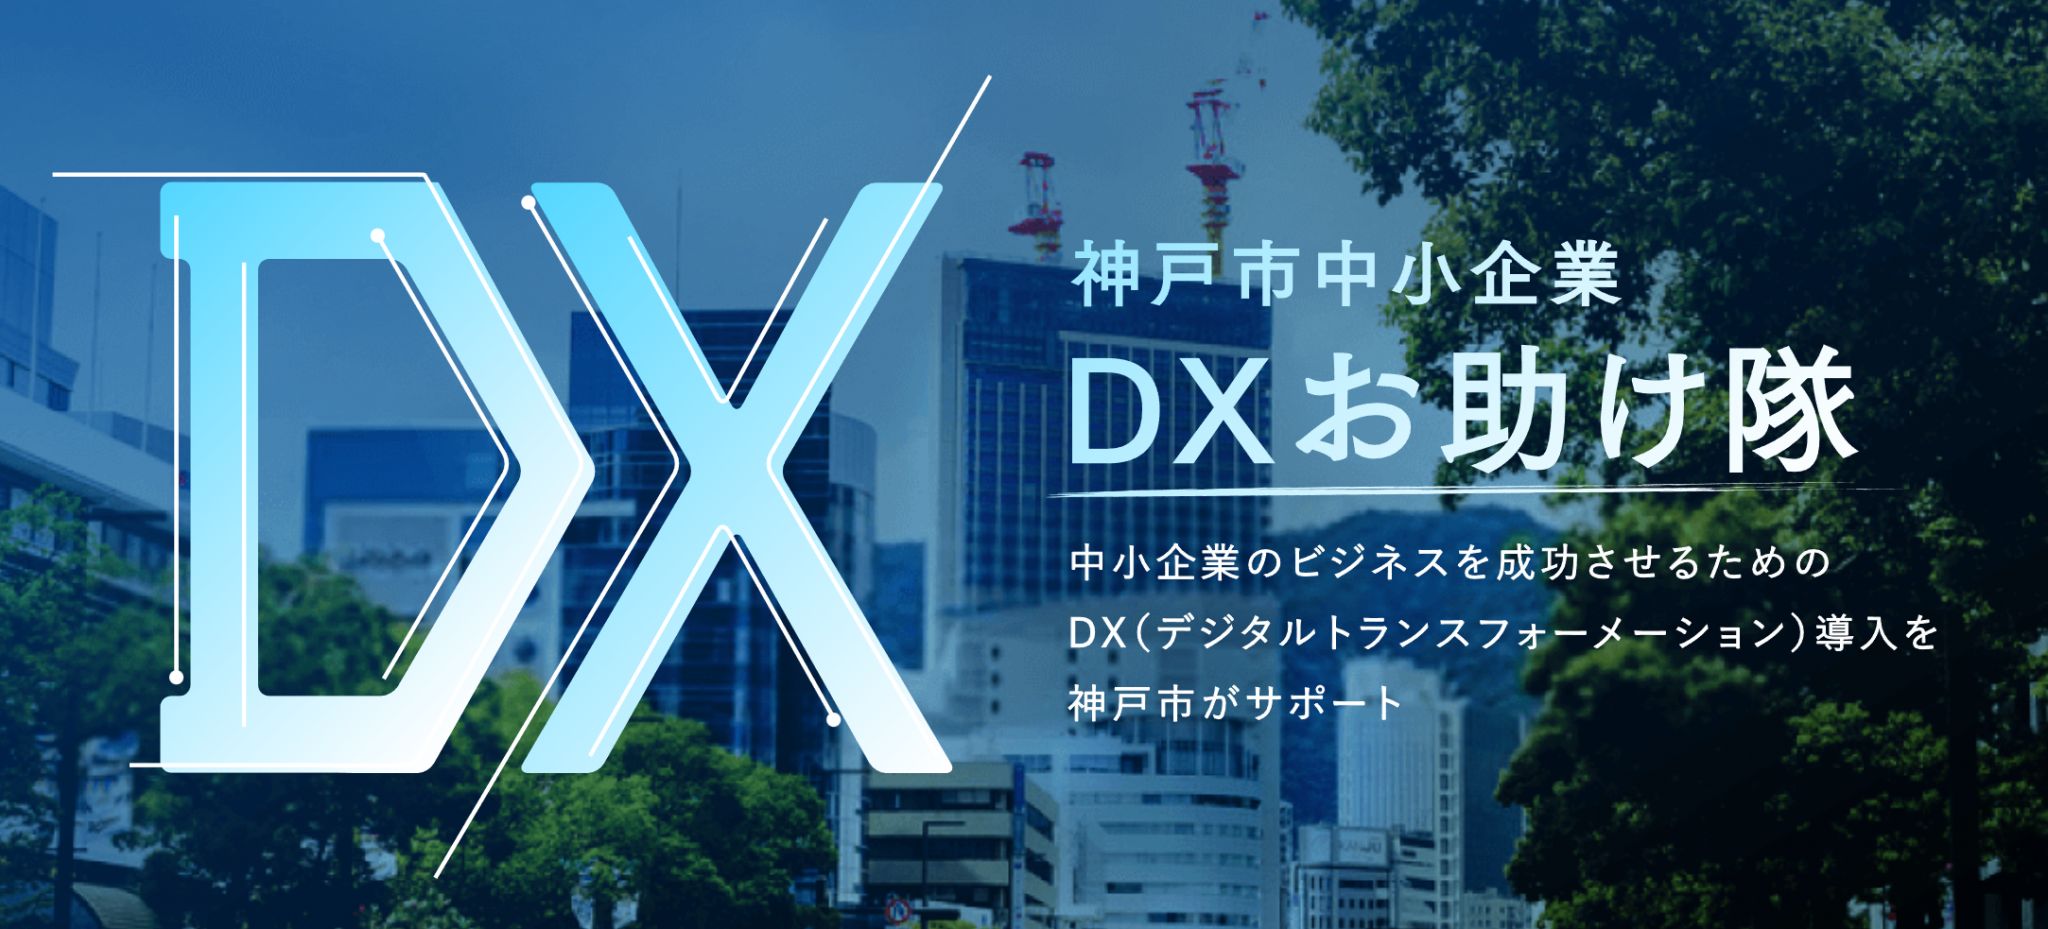 神戸市中小企業DXお助け隊事務局